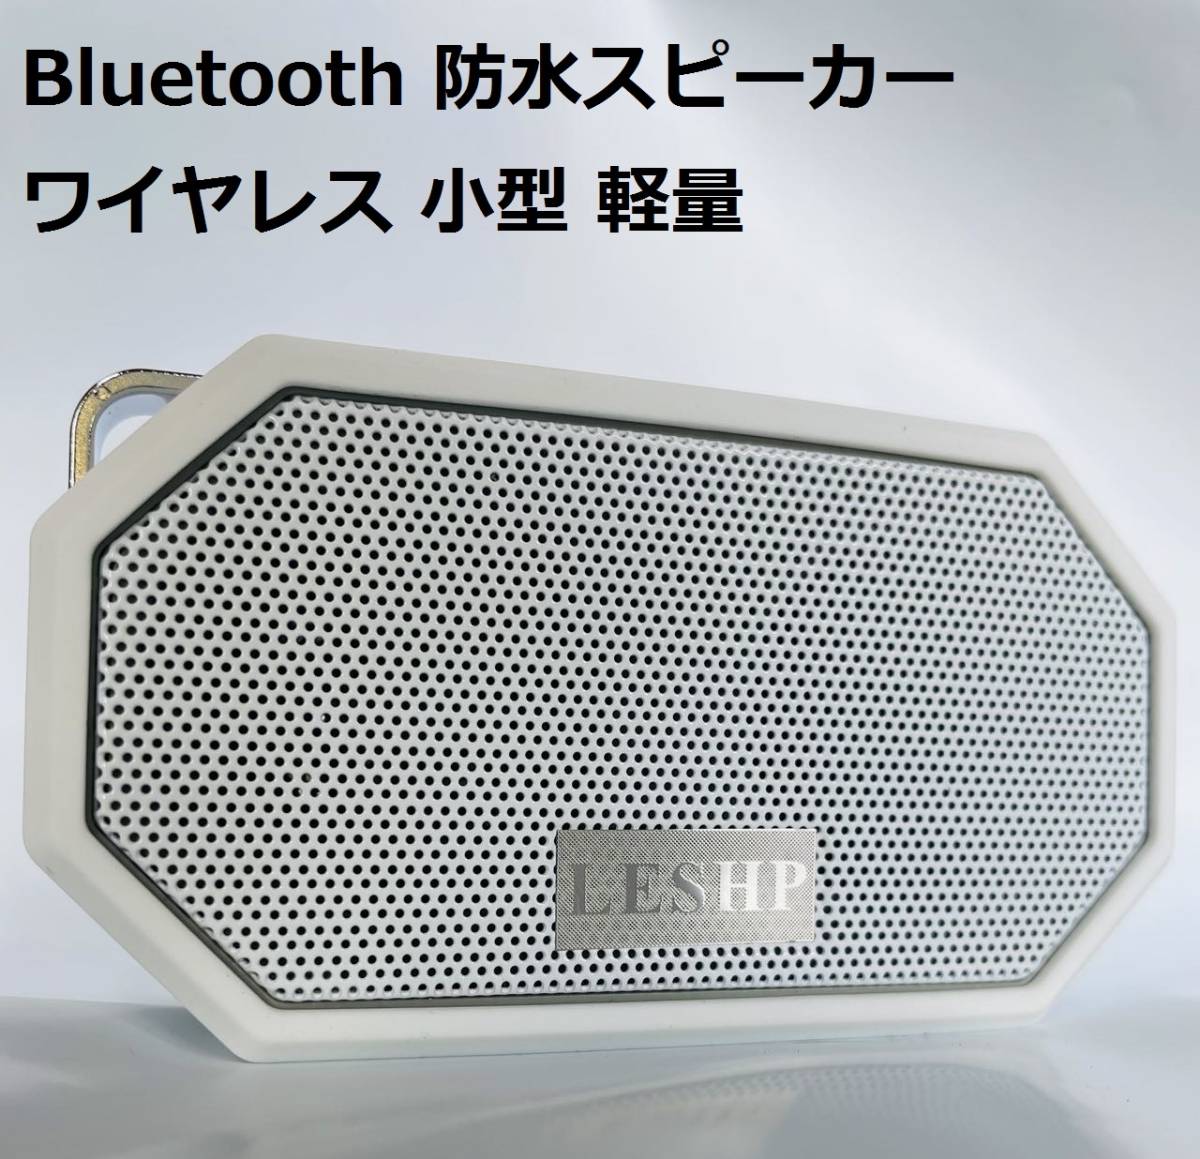 【新品・ホワイト】Bluetooth スピーカー 防水スピーカー ワイヤレス 小型 IPX66防水 USB充電 風呂 約7時間再生可能 コンパクト 軽量_画像1